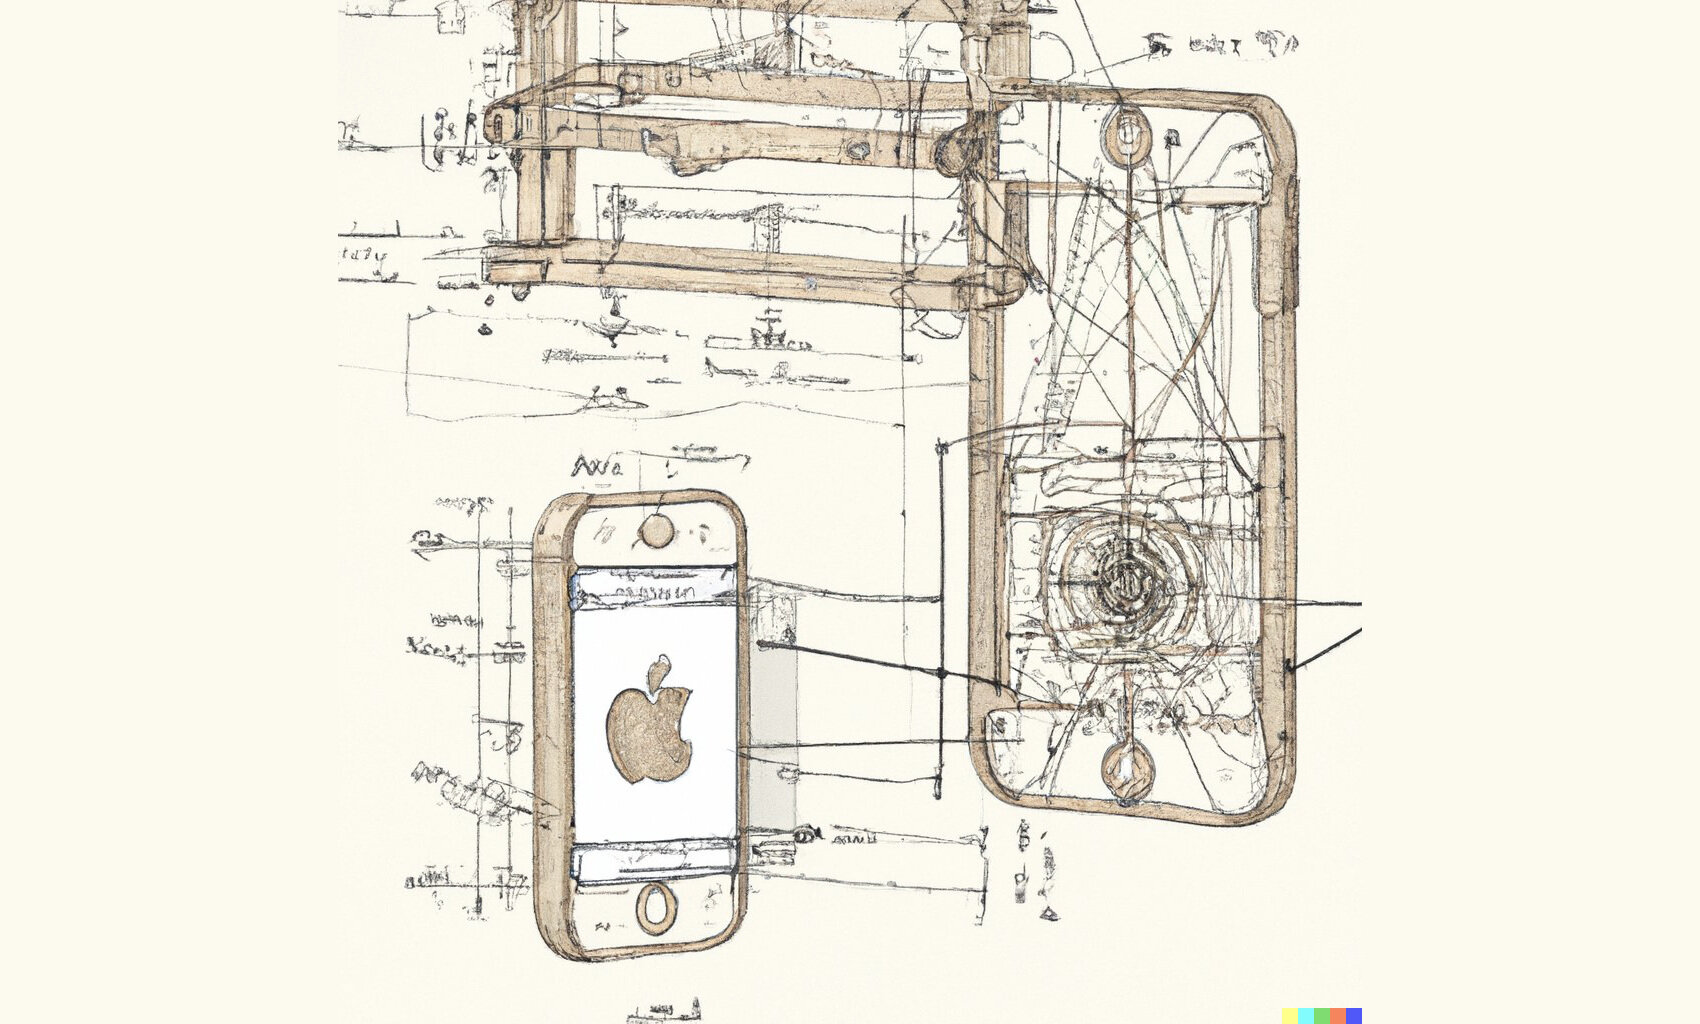 Нейросеть показала, как Леонардо да Винчи проектировал бы iPhone